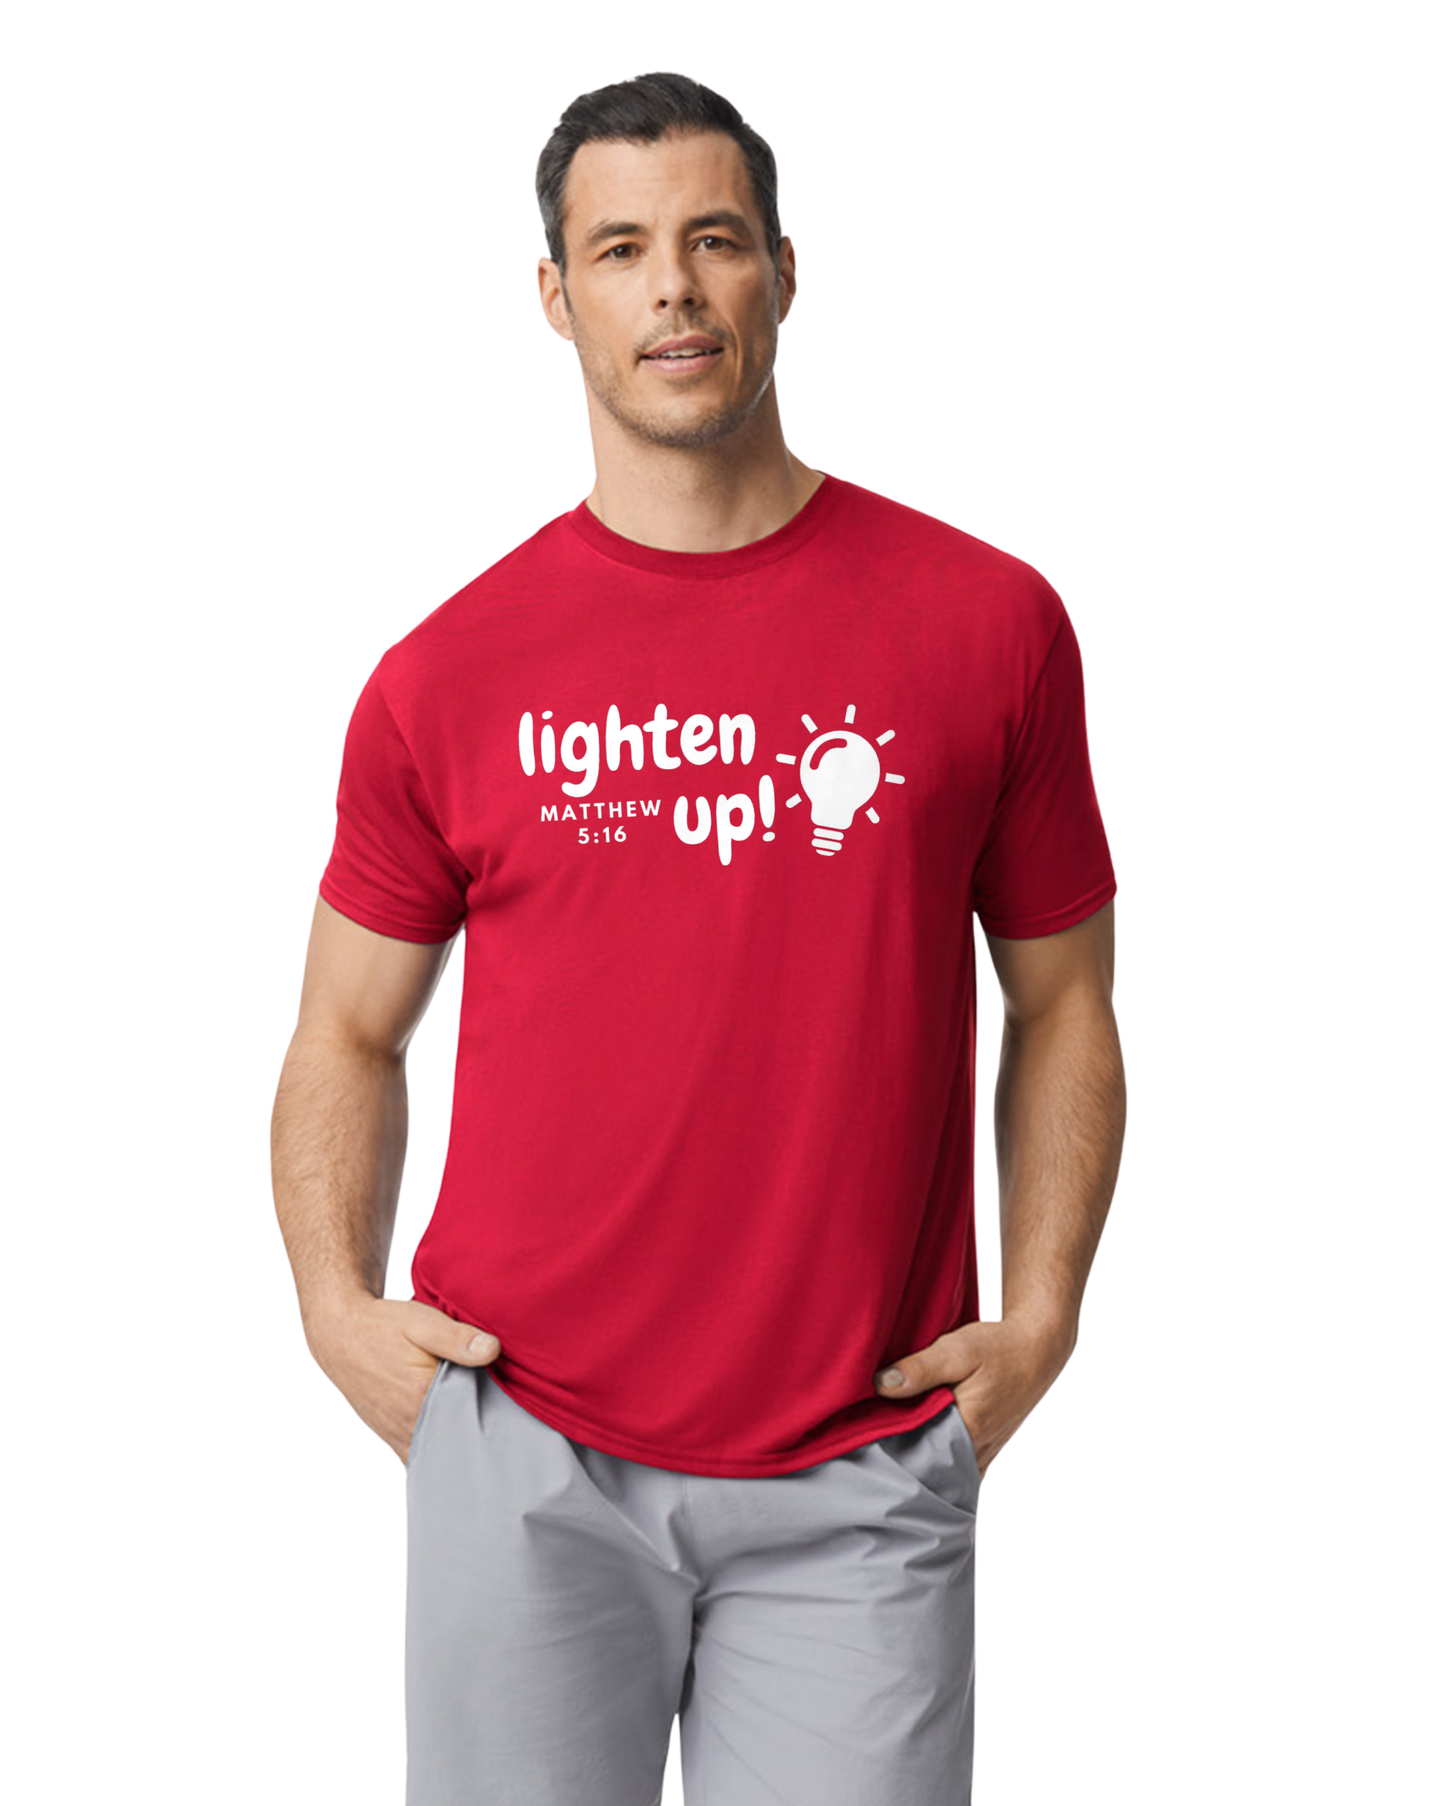 Lighten Up Men's Performance Shirt